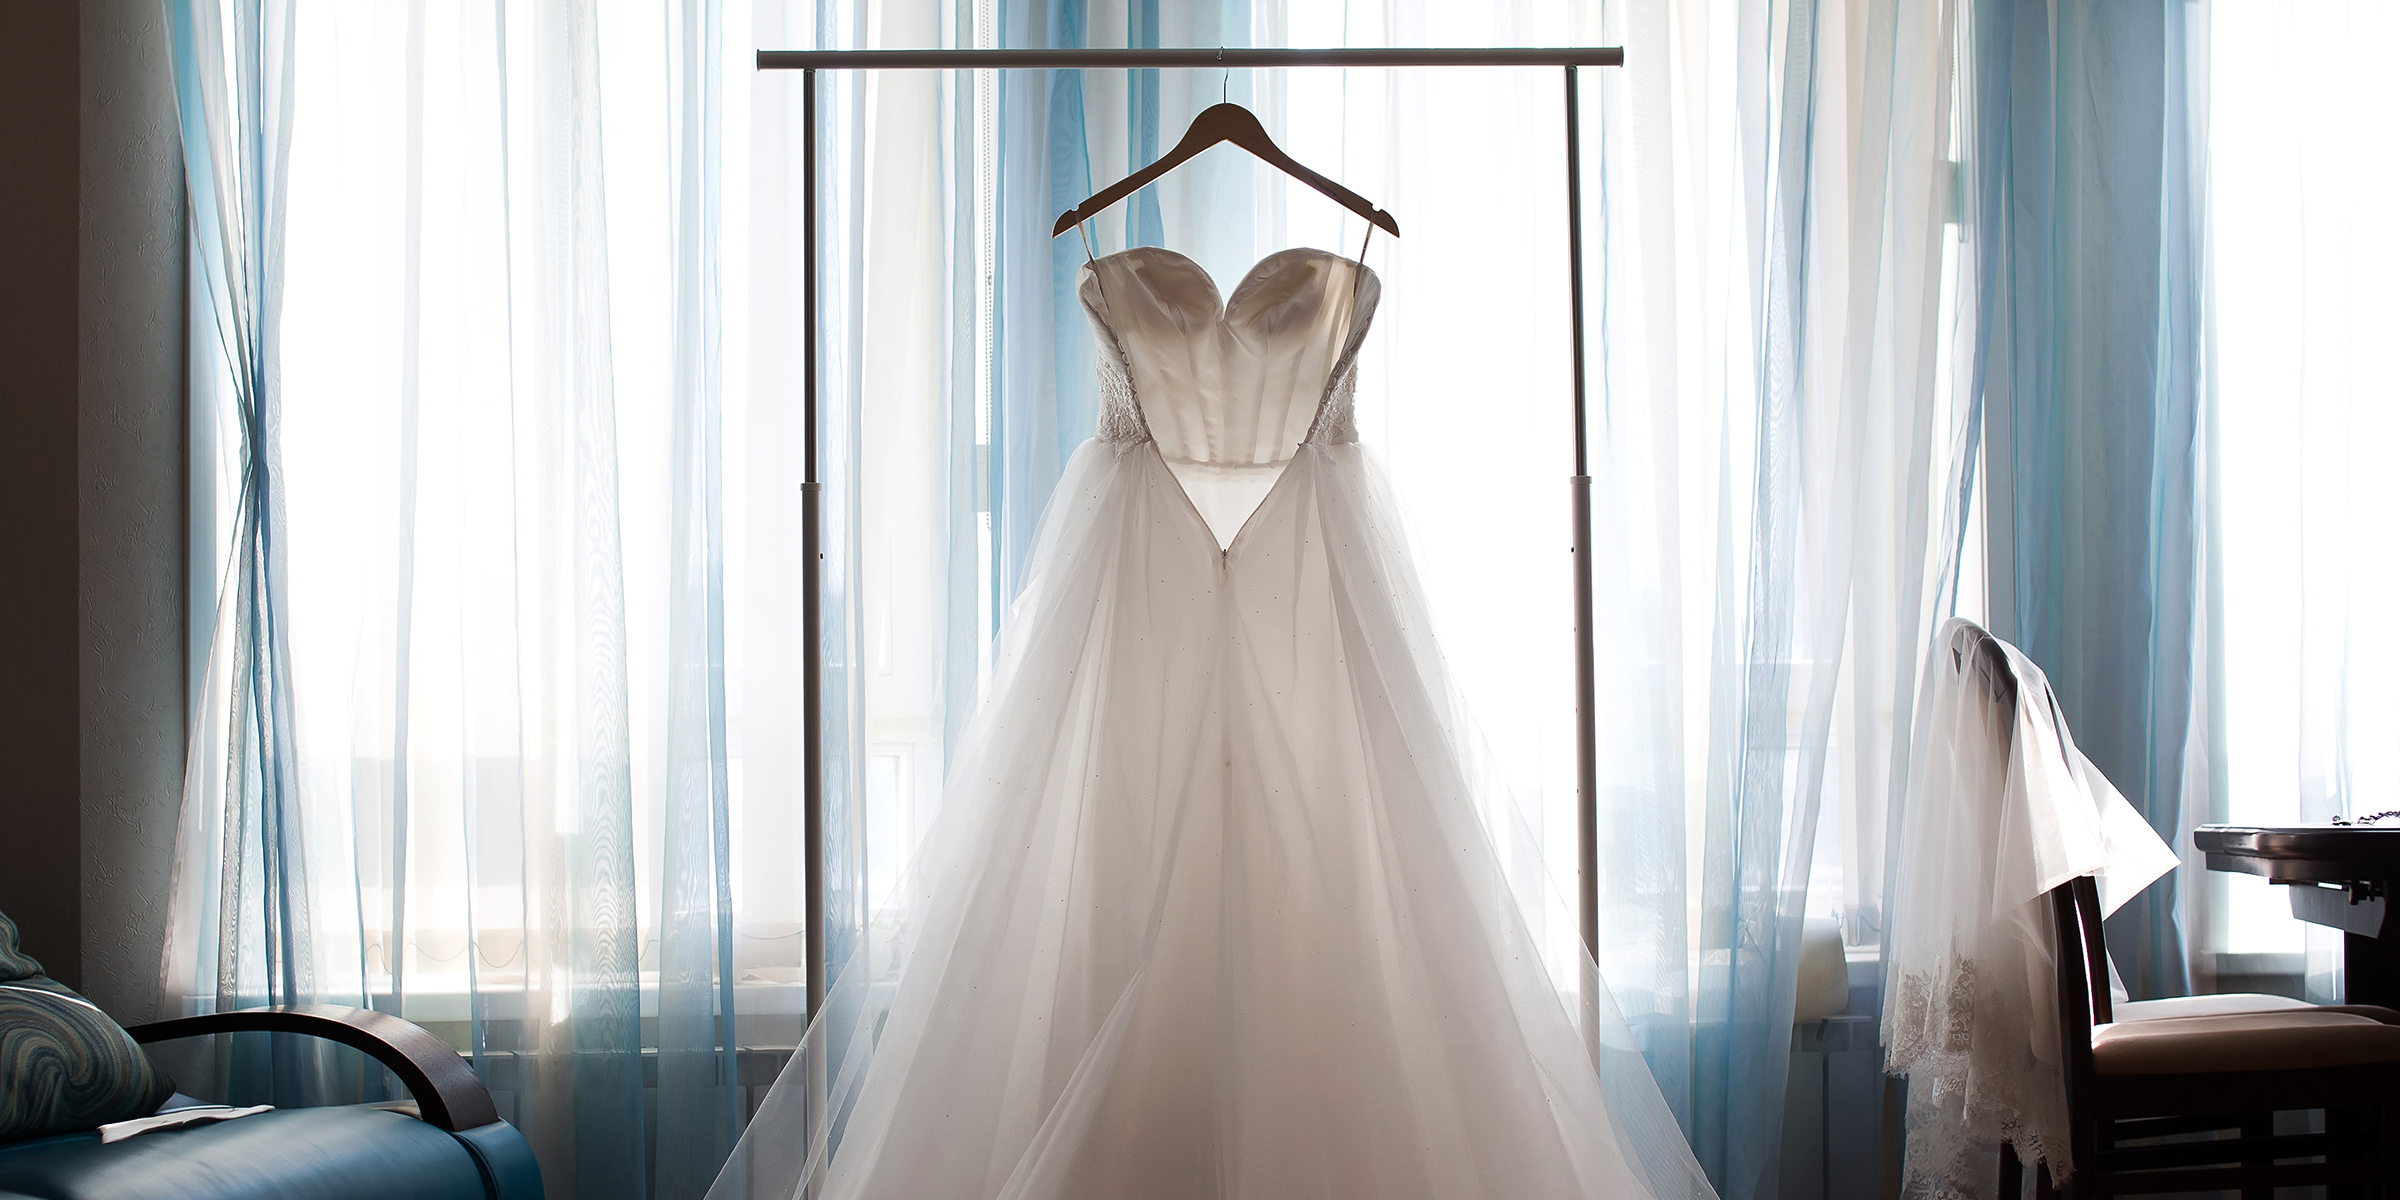 Ein Hochzeitskleid | Quelle: Shutterstock